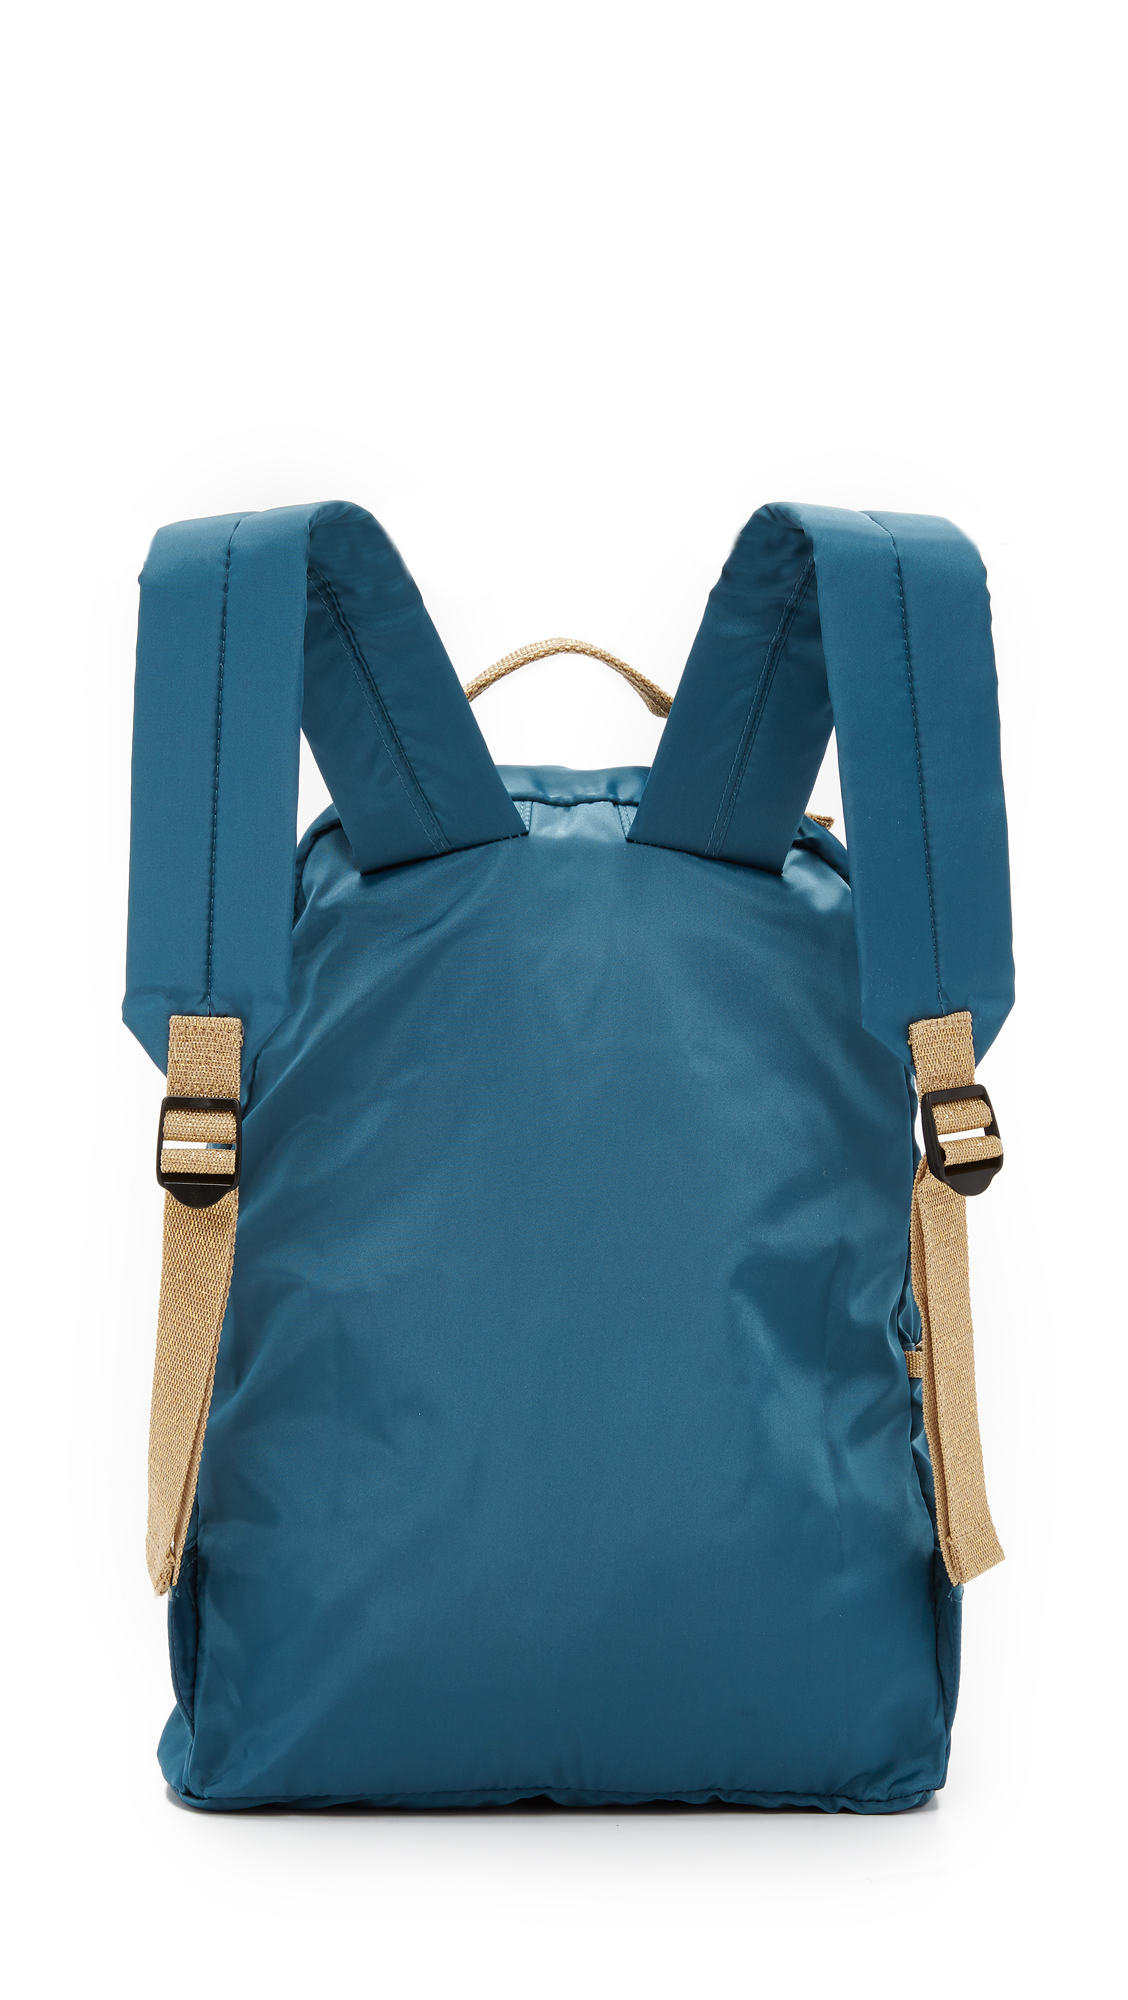 Lyst - Bensimon Backpack in Blue